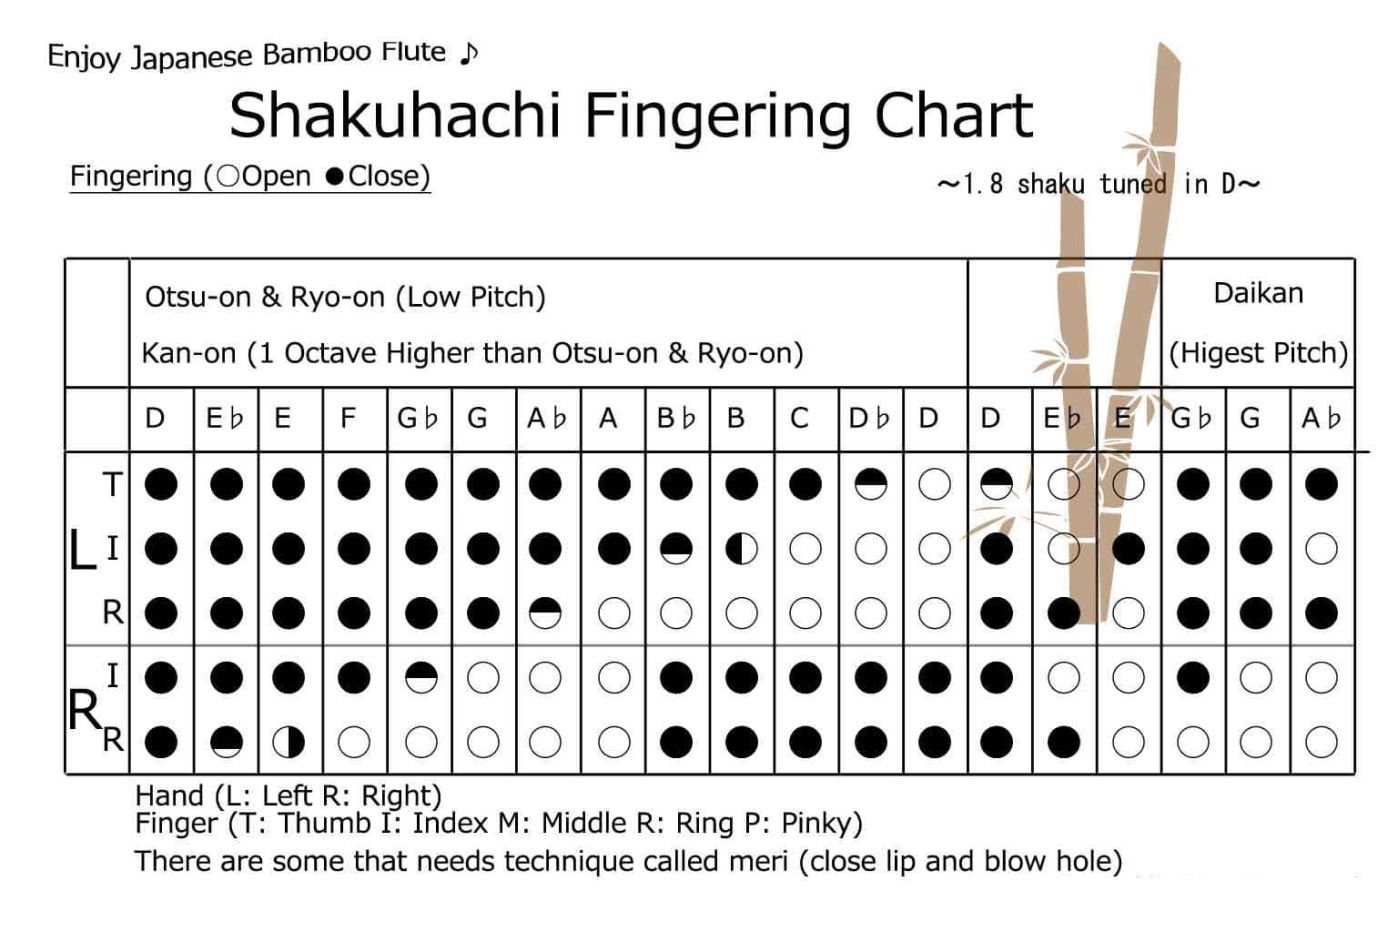 La diteggiatura dello Shakuhachi per ottenere le varie note